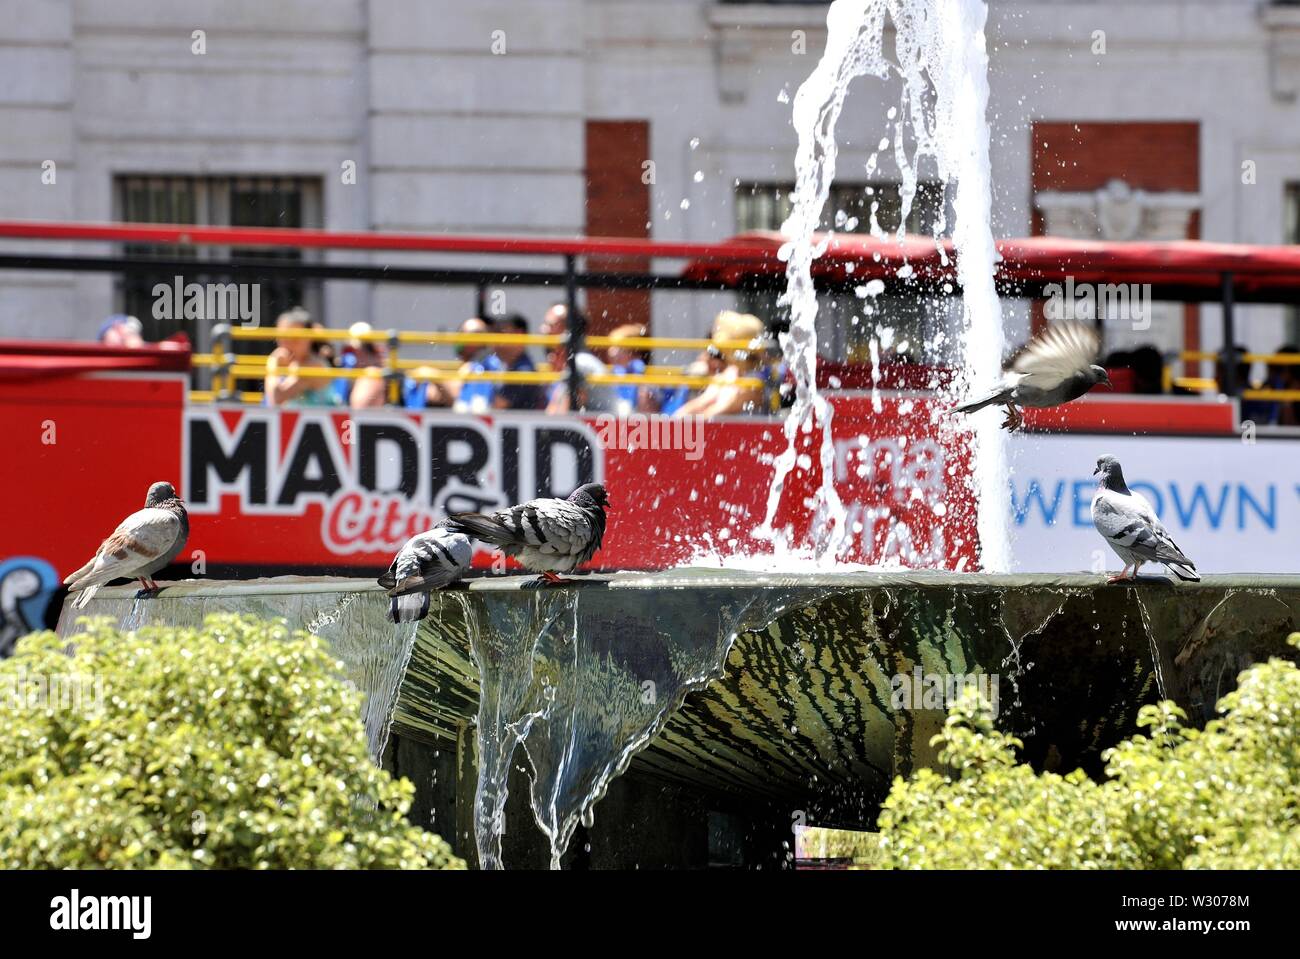 Madrid, Spanien. 11. Juli, 2019. Tauben trinken sie Wasser durch einen Brunnen in Madrid, Spanien, 11. Juli 2019. Madrid sah eine Temperatur von über 35 Grad Celsius in den letzten Tagen. Quelle: Guo Qiuda/Xinhua/Alamy leben Nachrichten Stockfoto